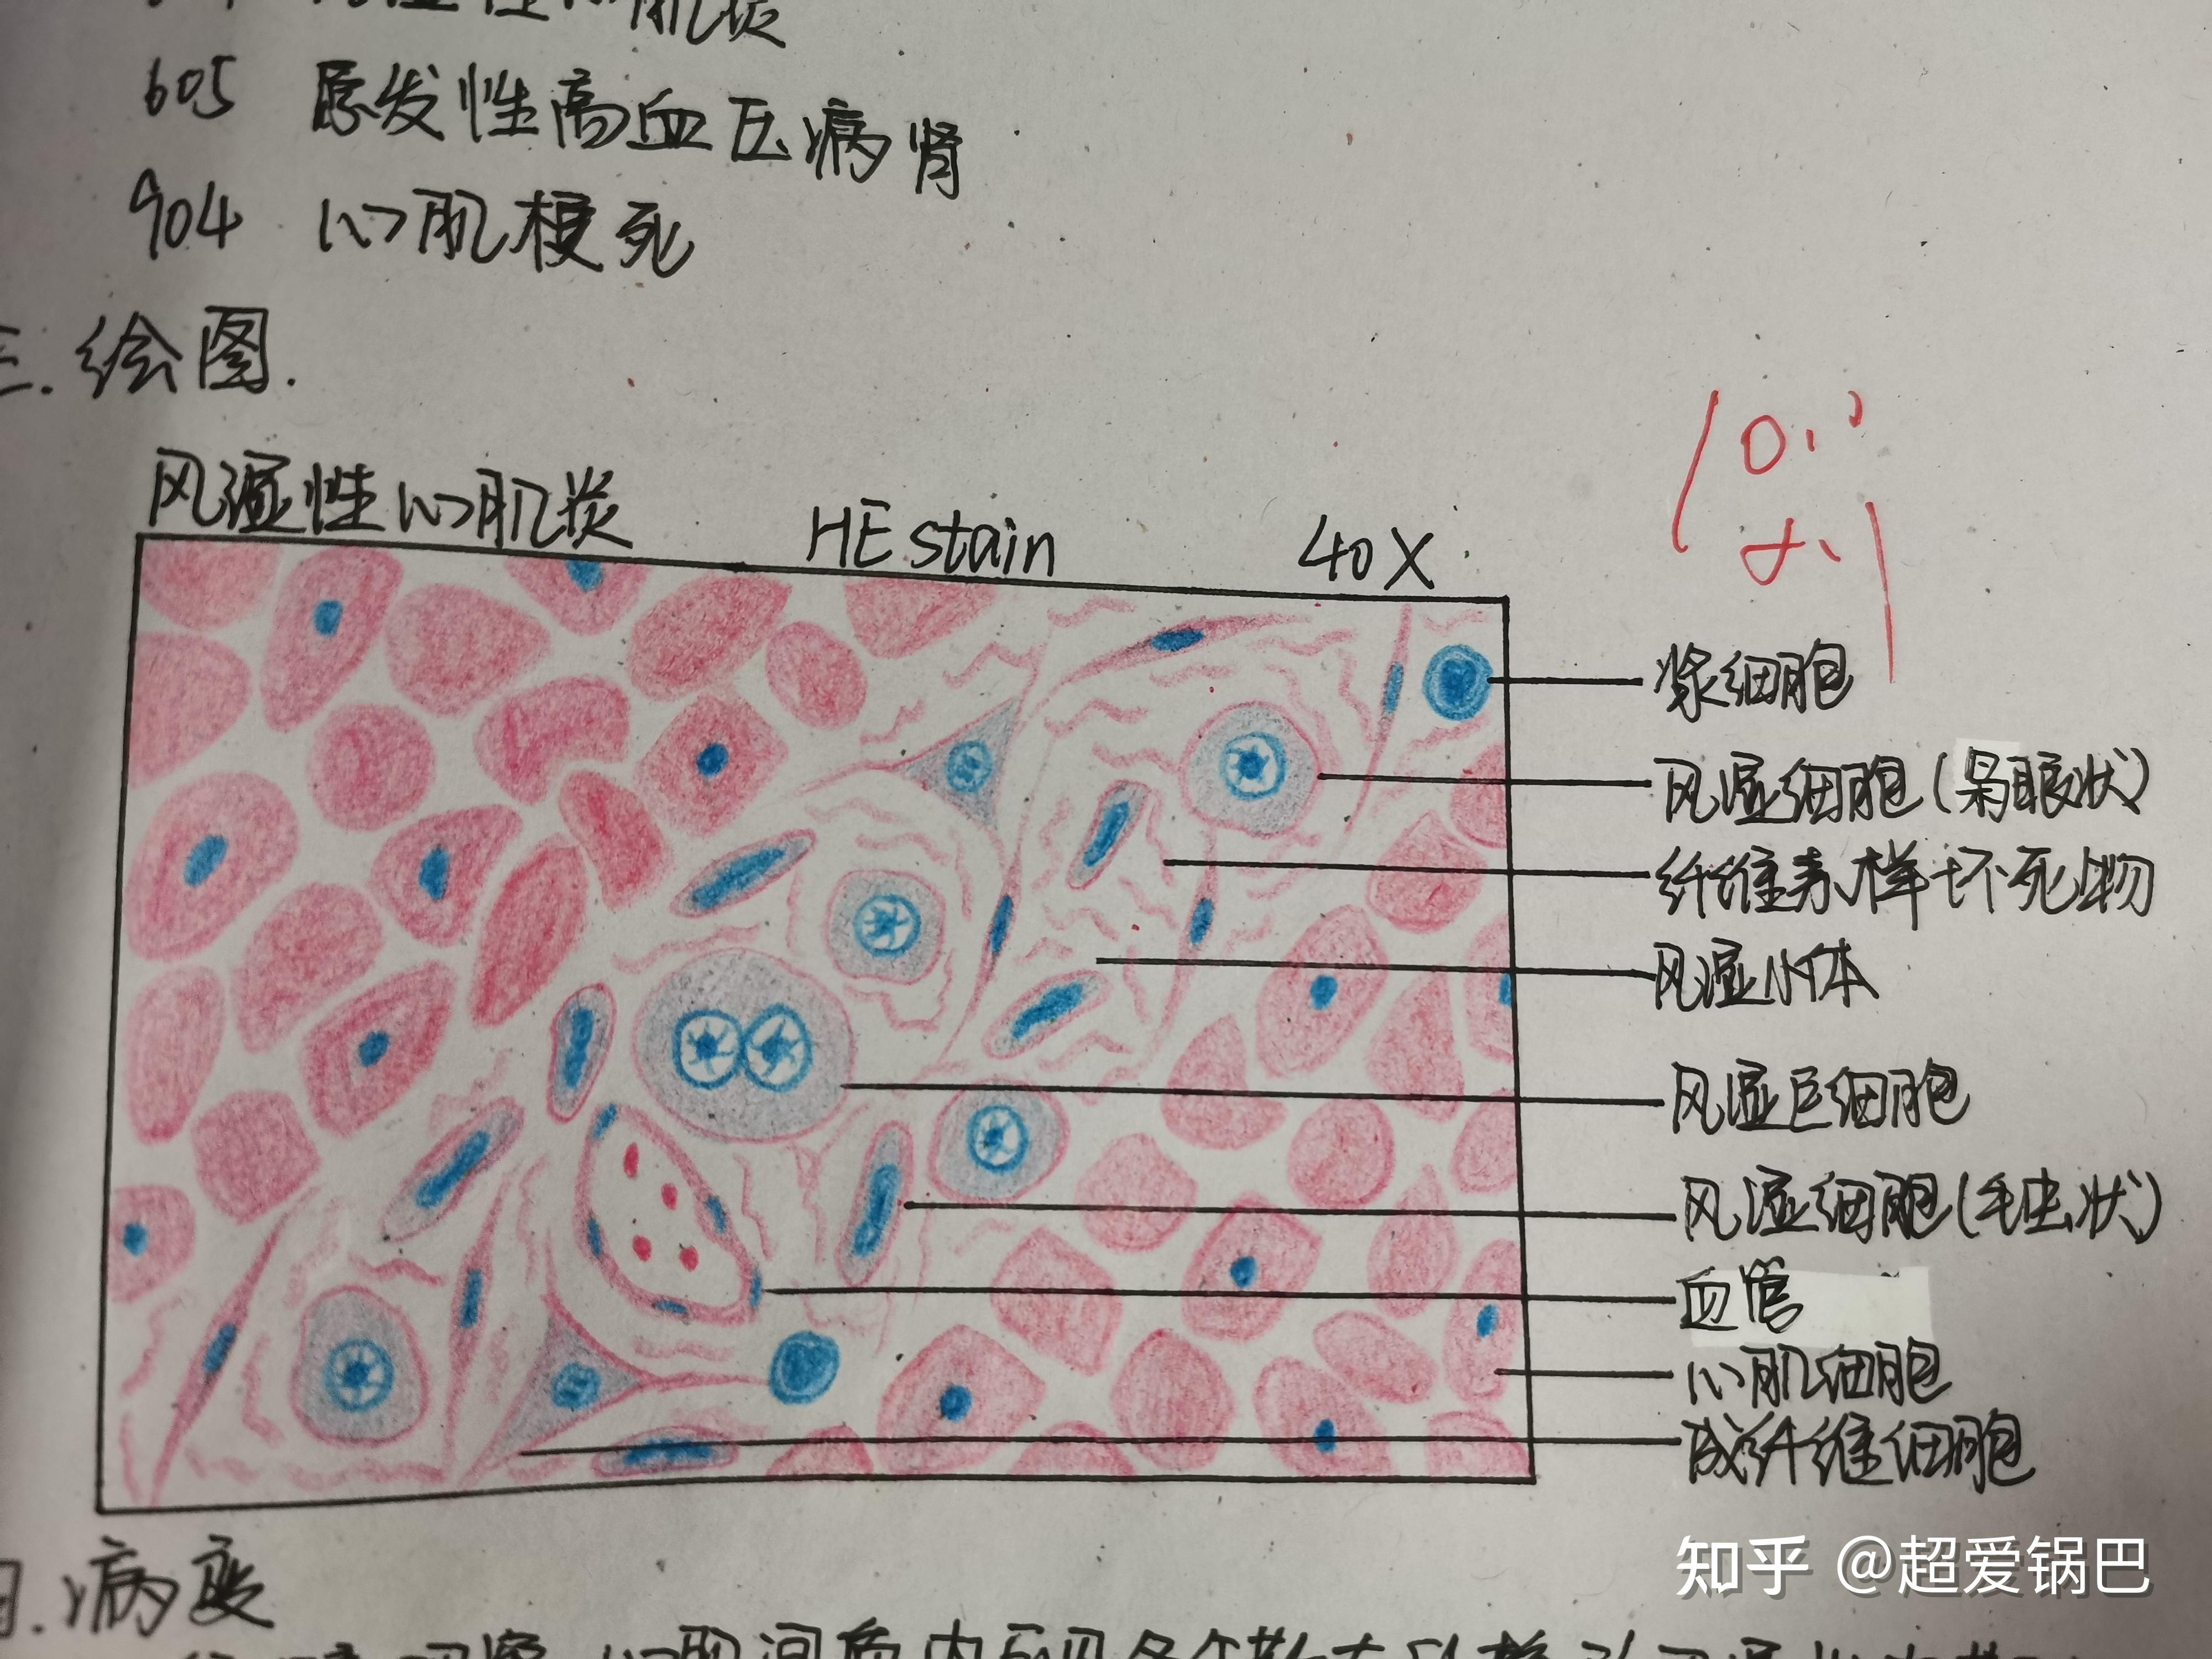 螺形菌红蓝铅笔绘图图片